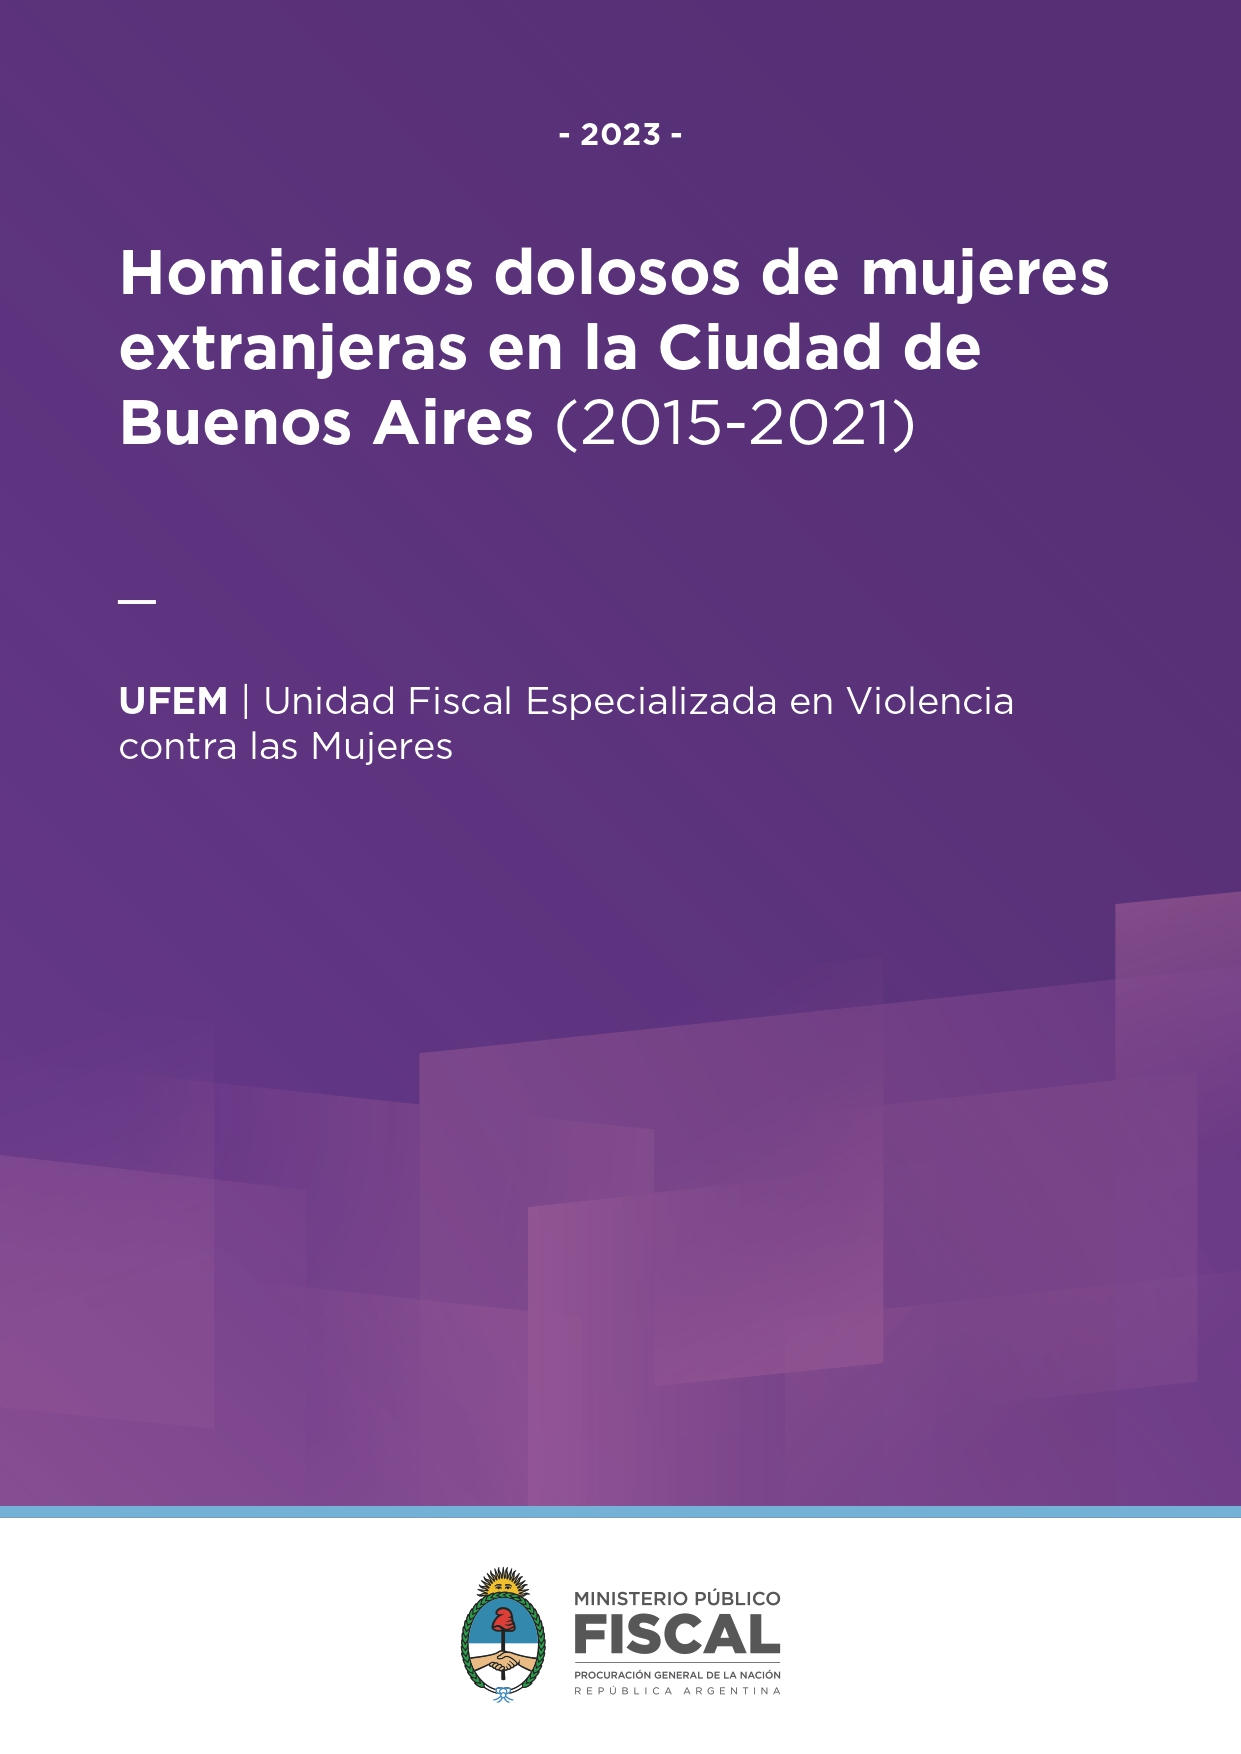 Homicidios dolosos de mujeres extranjeras en la Ciudad de Buenos Aires (2015-2021)